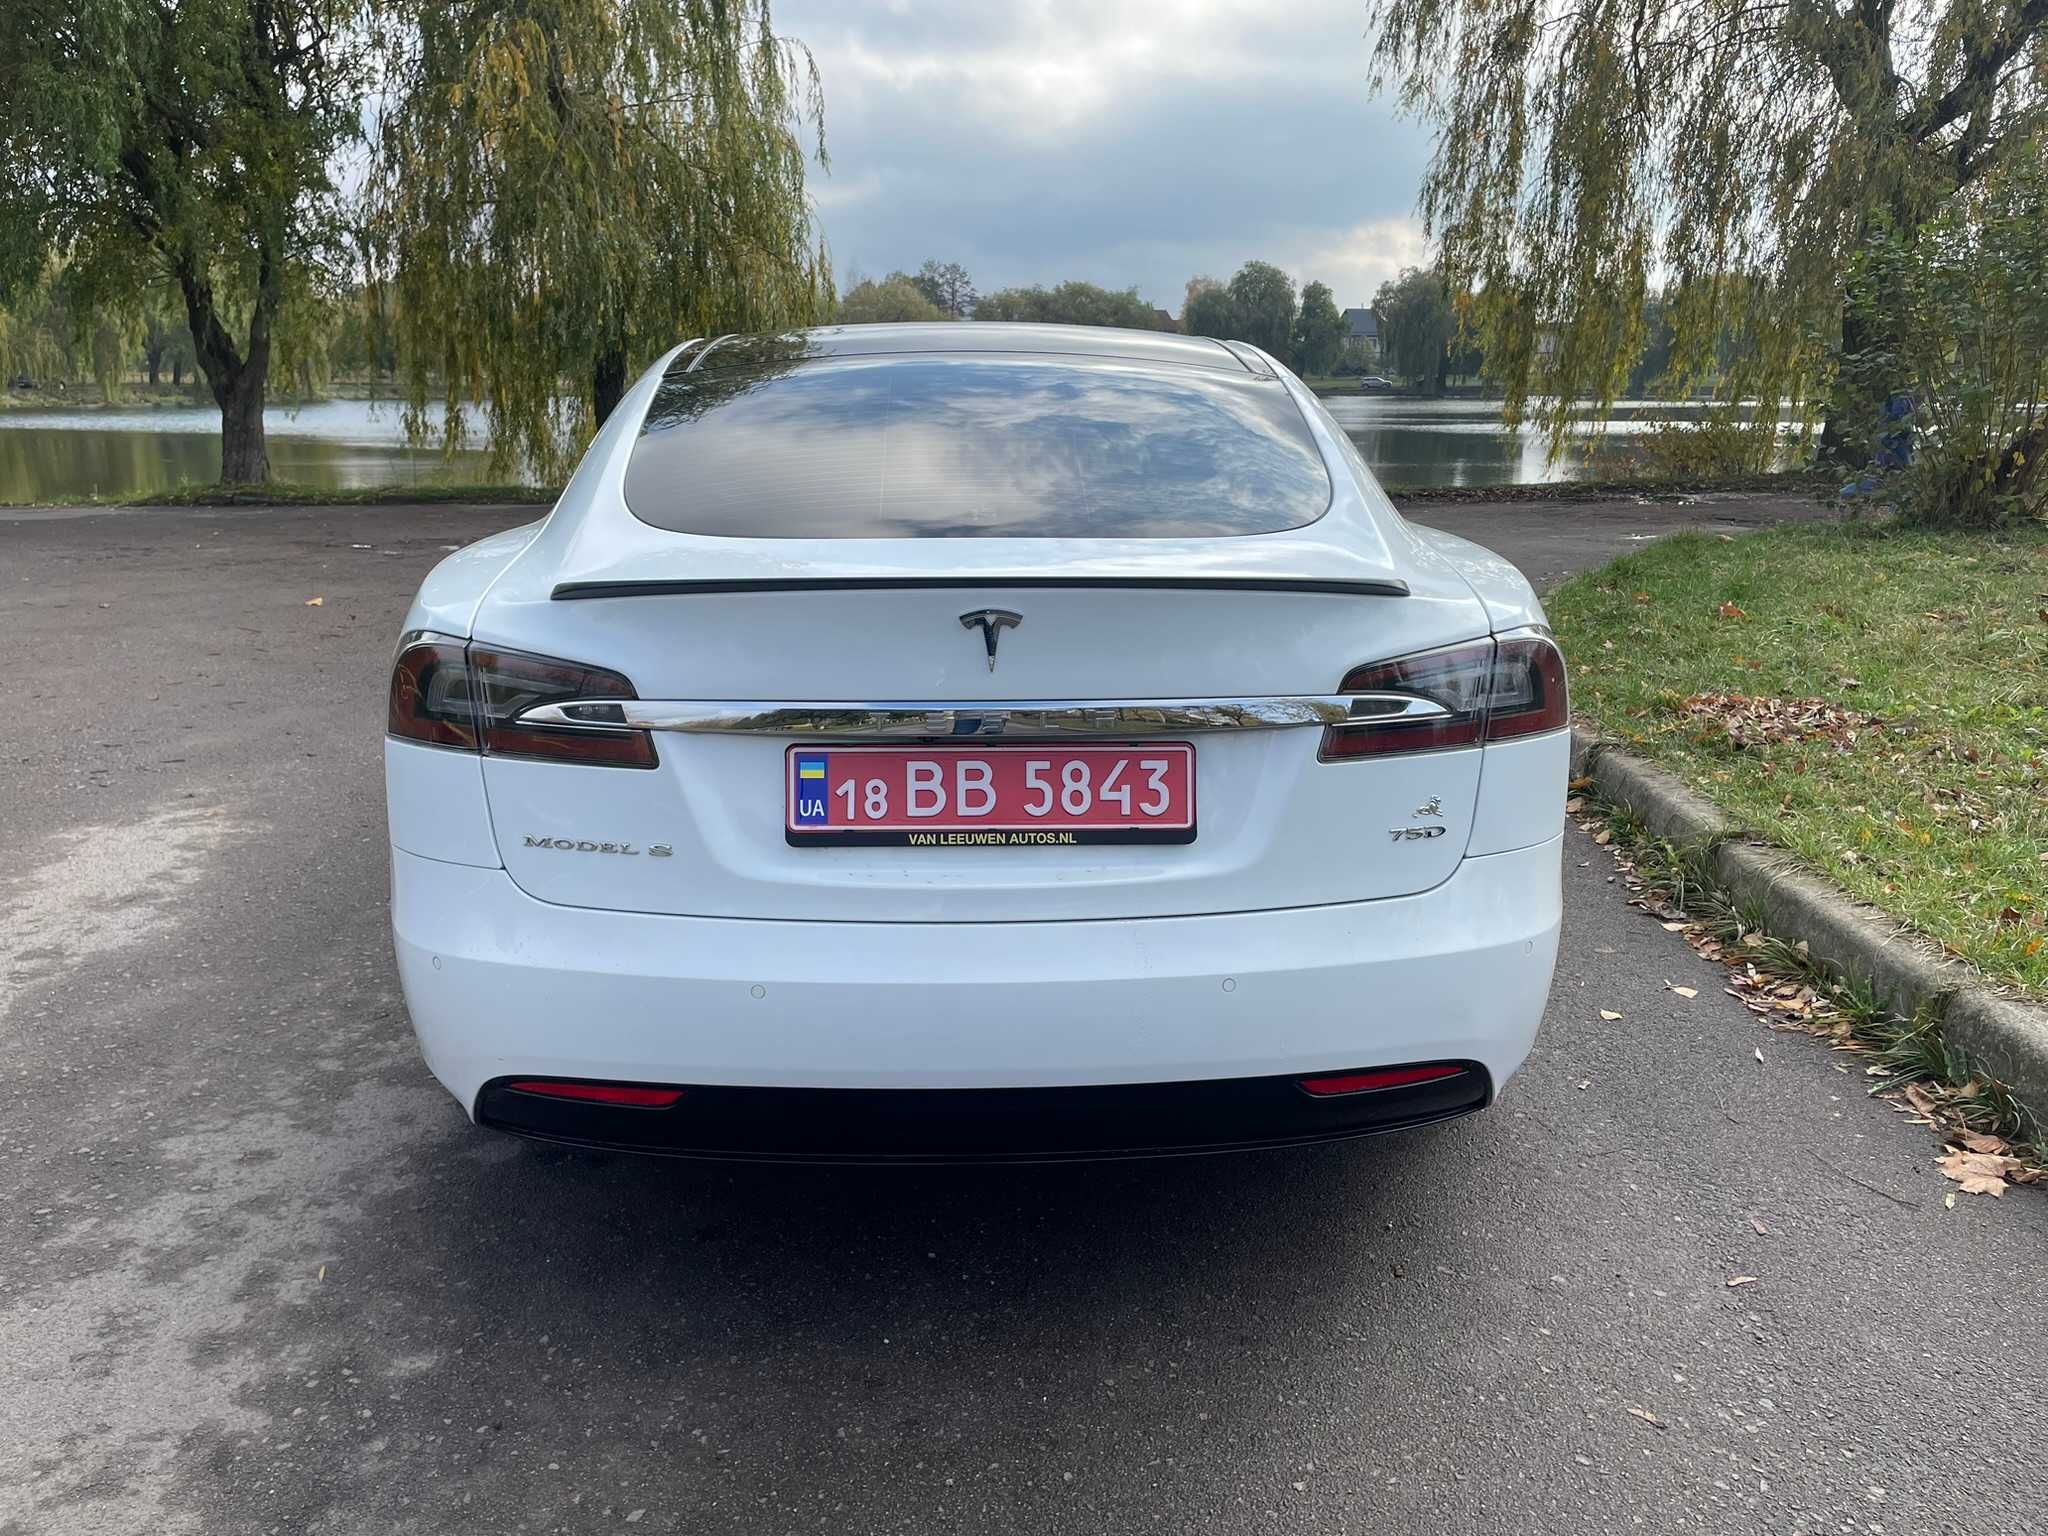 Tesla Model S Dual Motor 75D 2018 року випуску Пробіг 53000 км